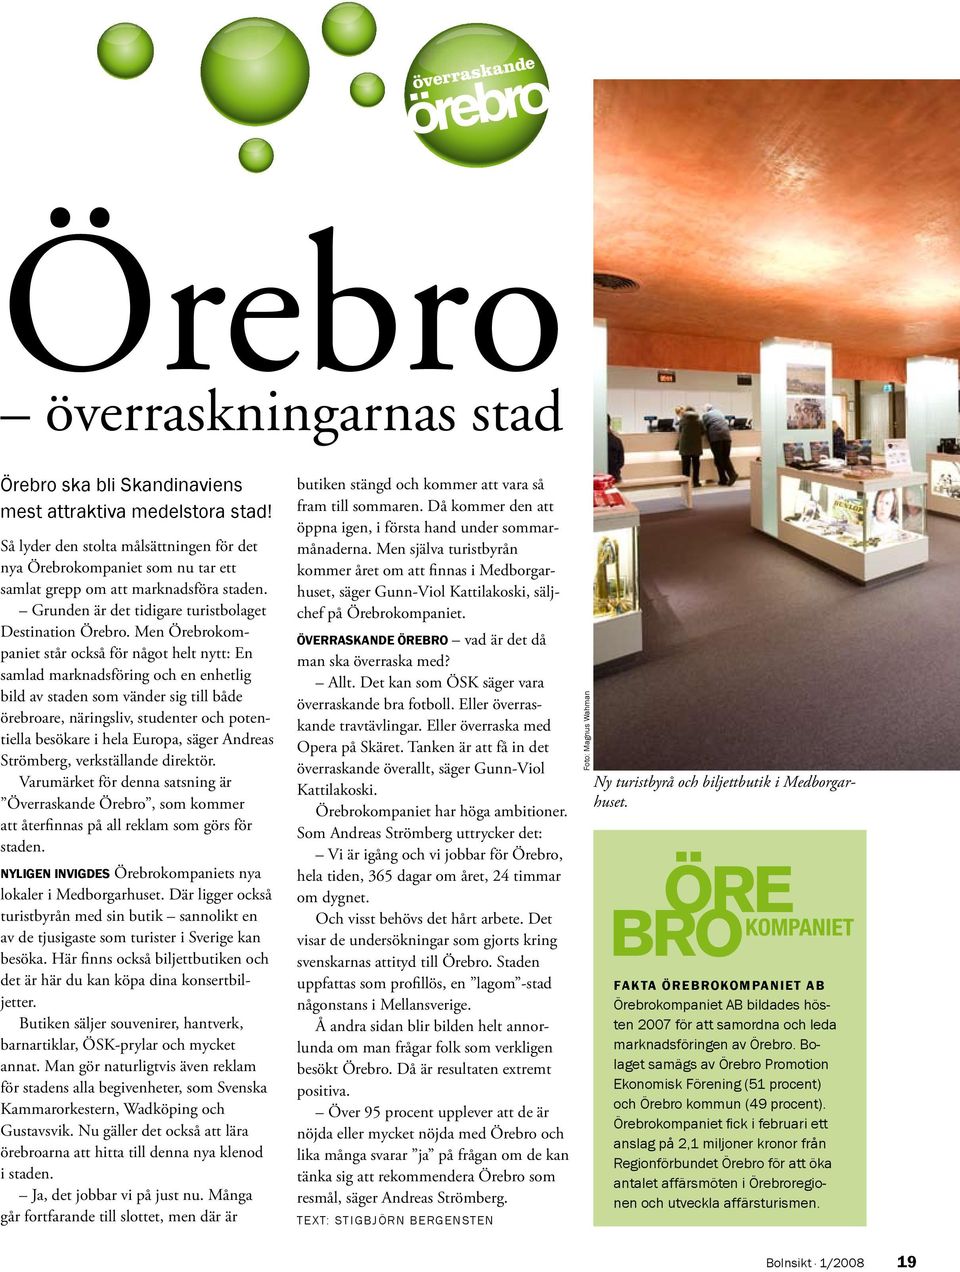 Men Örebrokompaniet står också för något helt nytt: En samlad marknadsföring och en enhetlig bild av staden som vänder sig till både örebroare, näringsliv, studenter och potentiella besökare i hela